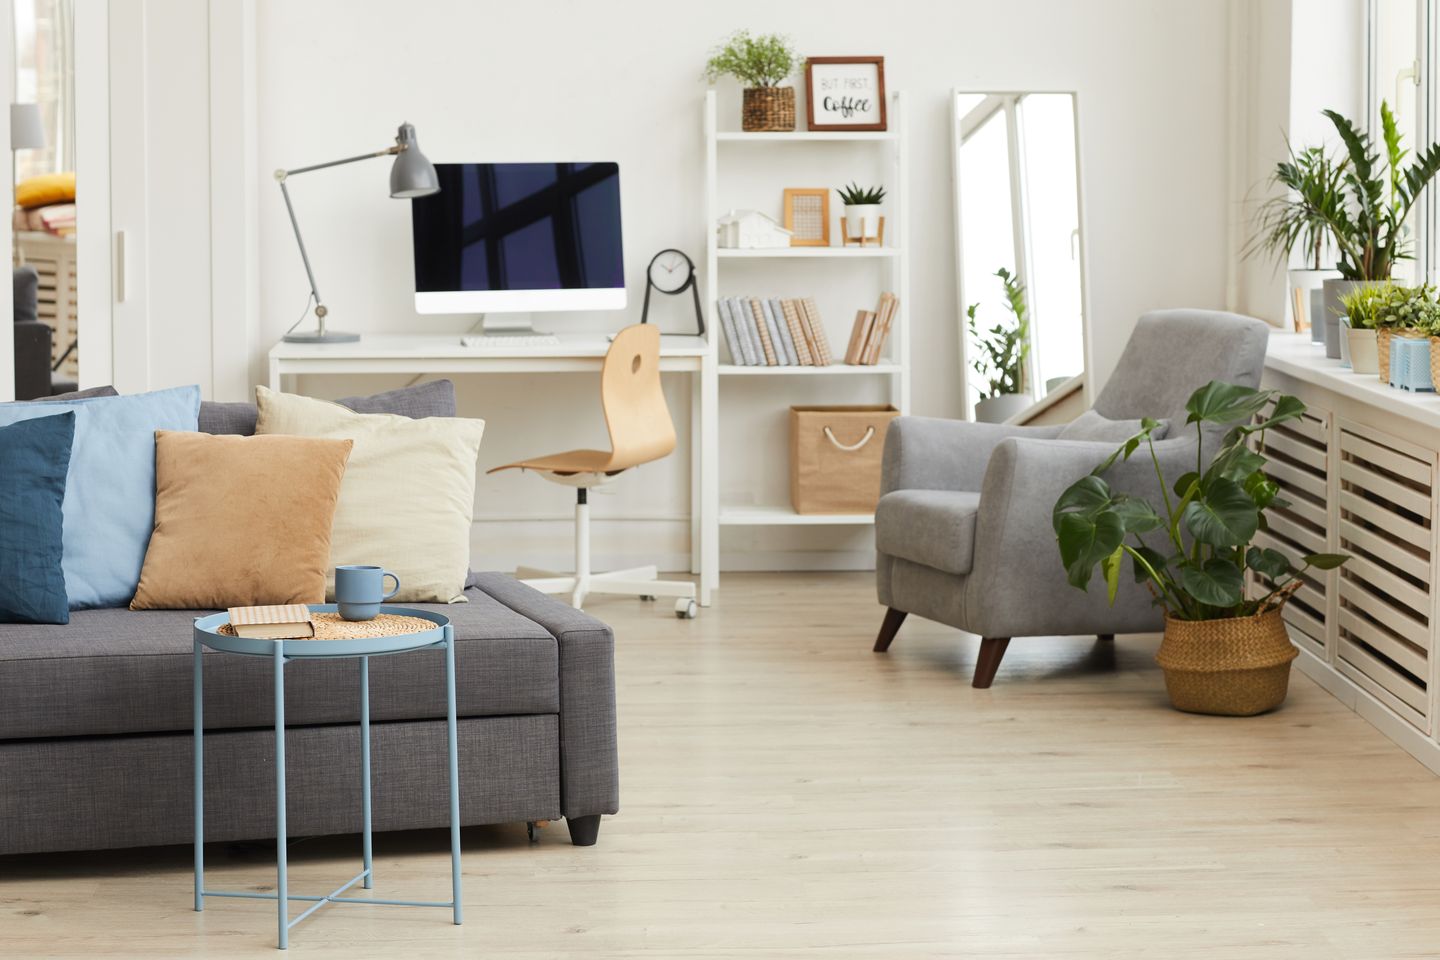 Cat dinding berwarna putih bisa kamu gunakan untuk ruang kerja jika kamu ingin menciptakan ruangan yang minim distraksi.